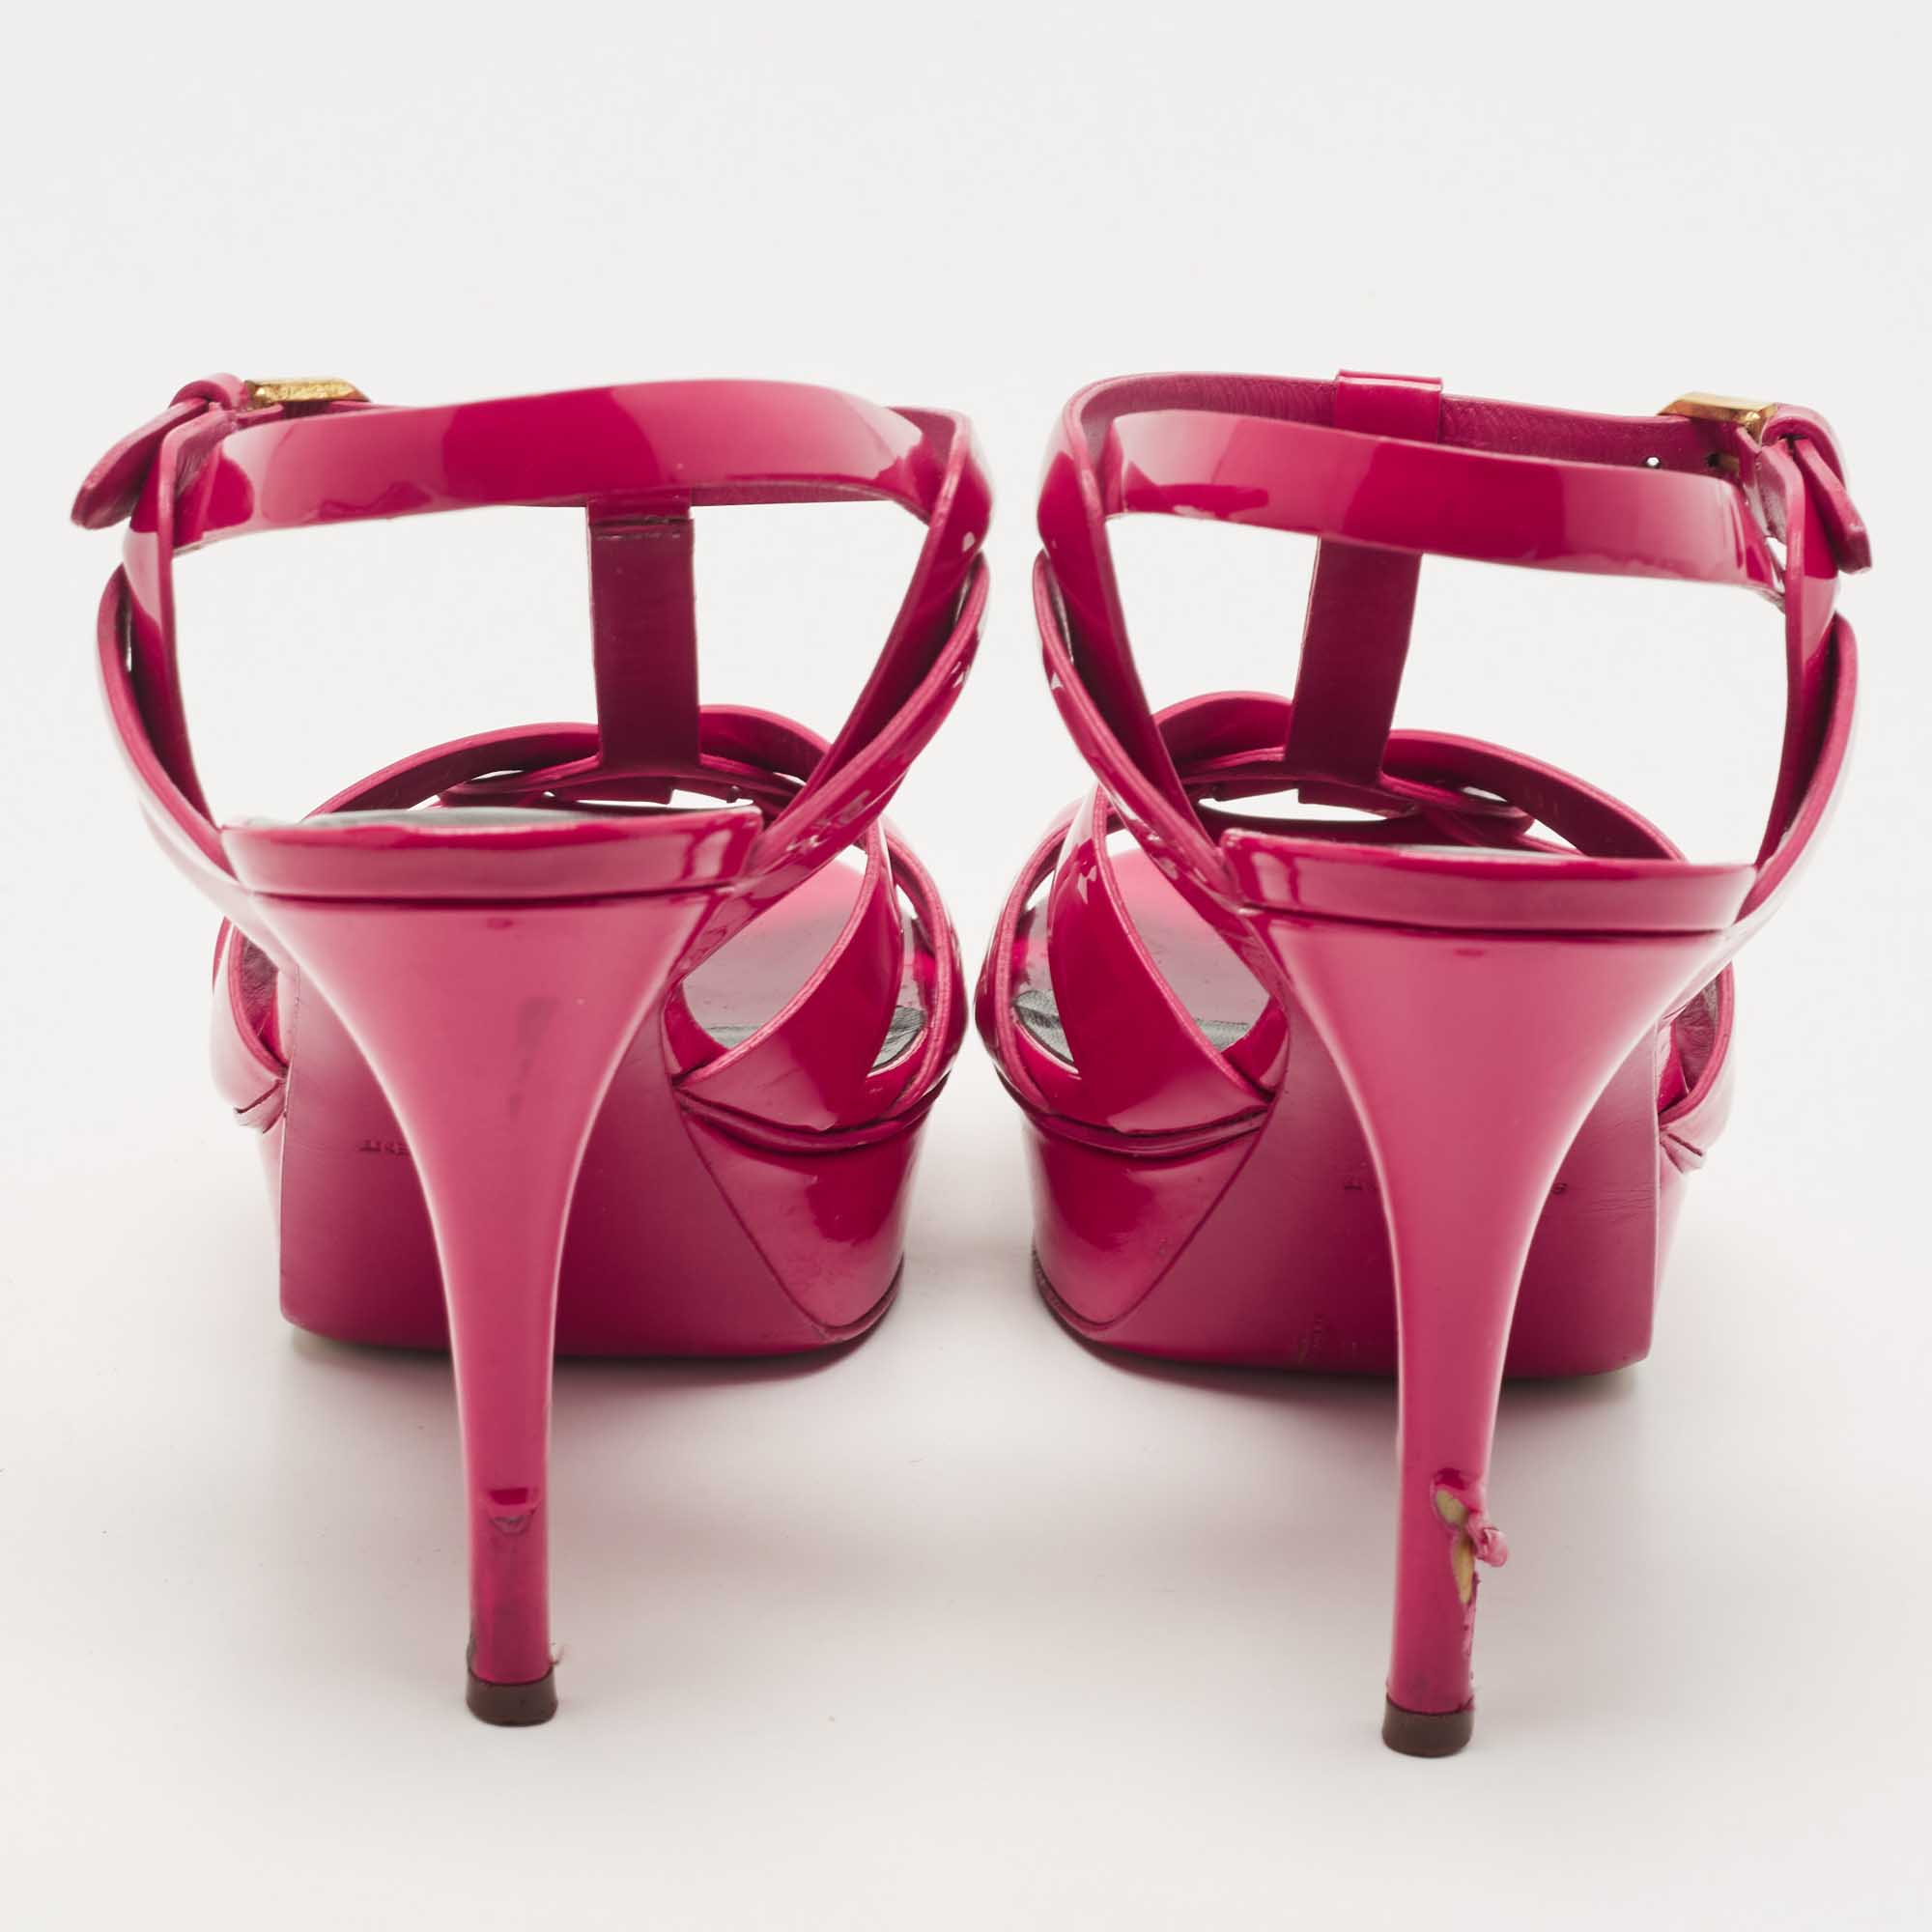 Saint Laurent Pink Patent Leather Tribute Sandals Size 39